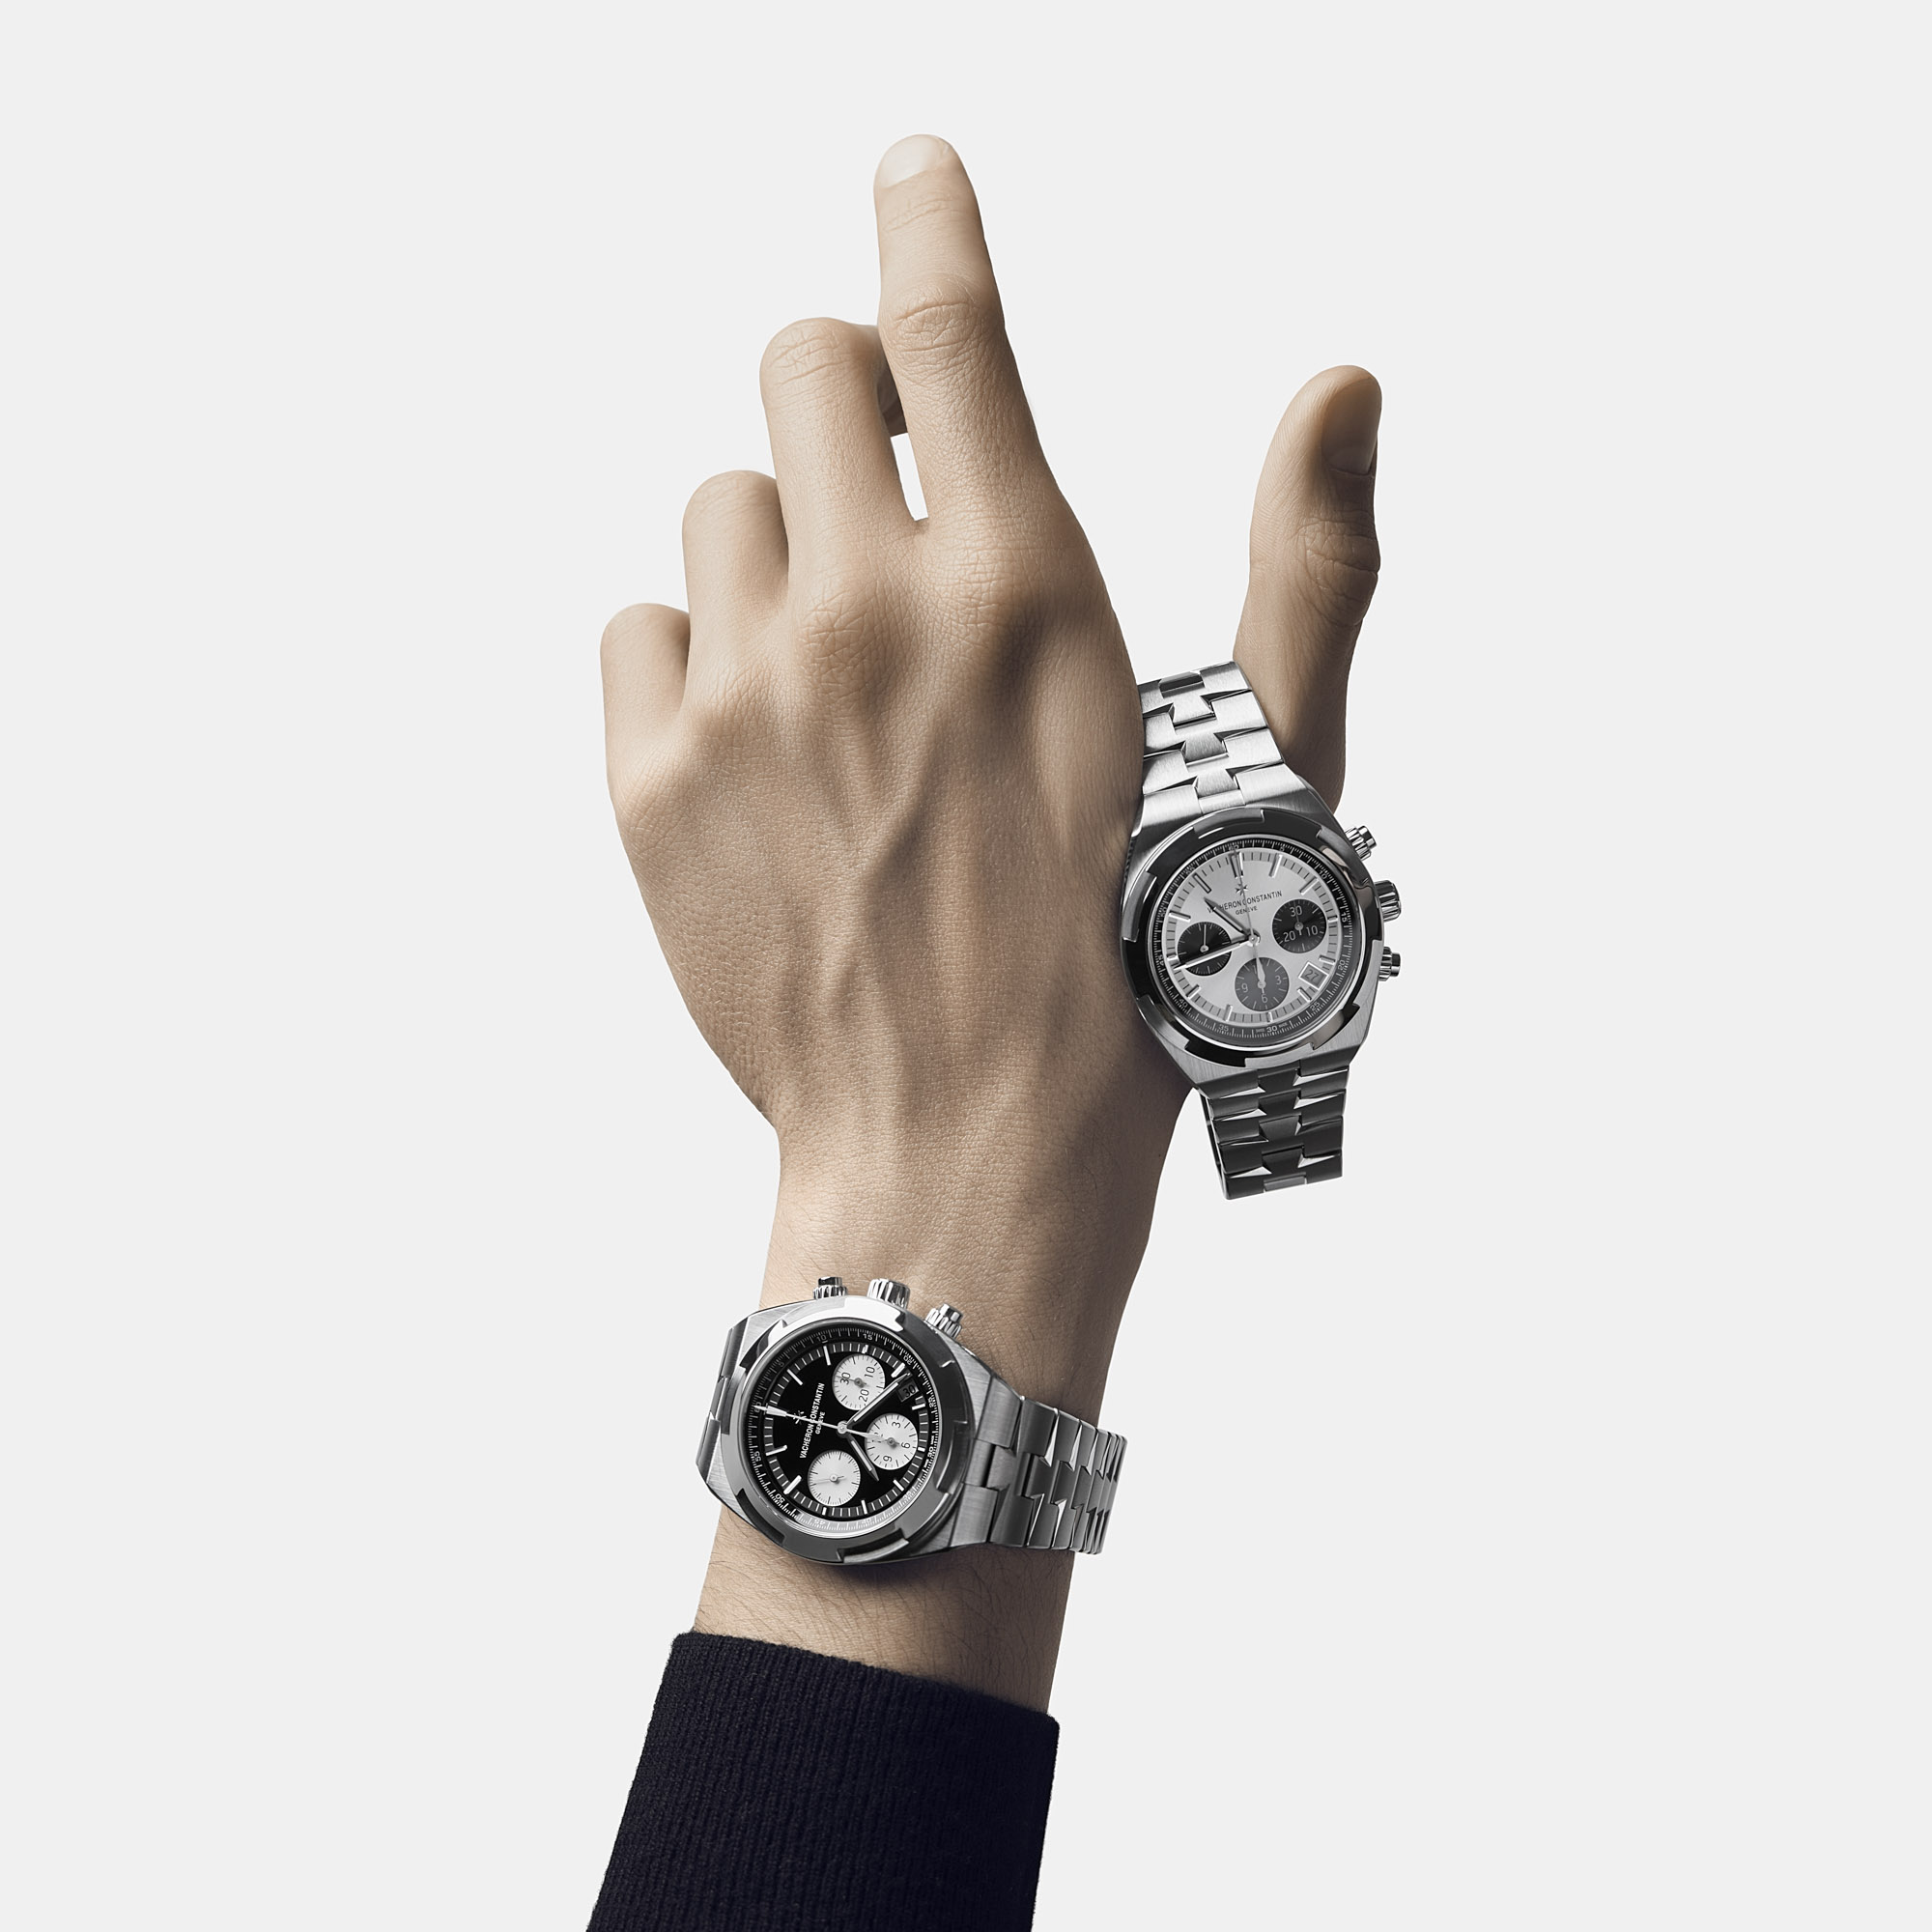 Vacheron Constantin представляет часы с хронографом Panda Dial Overseas